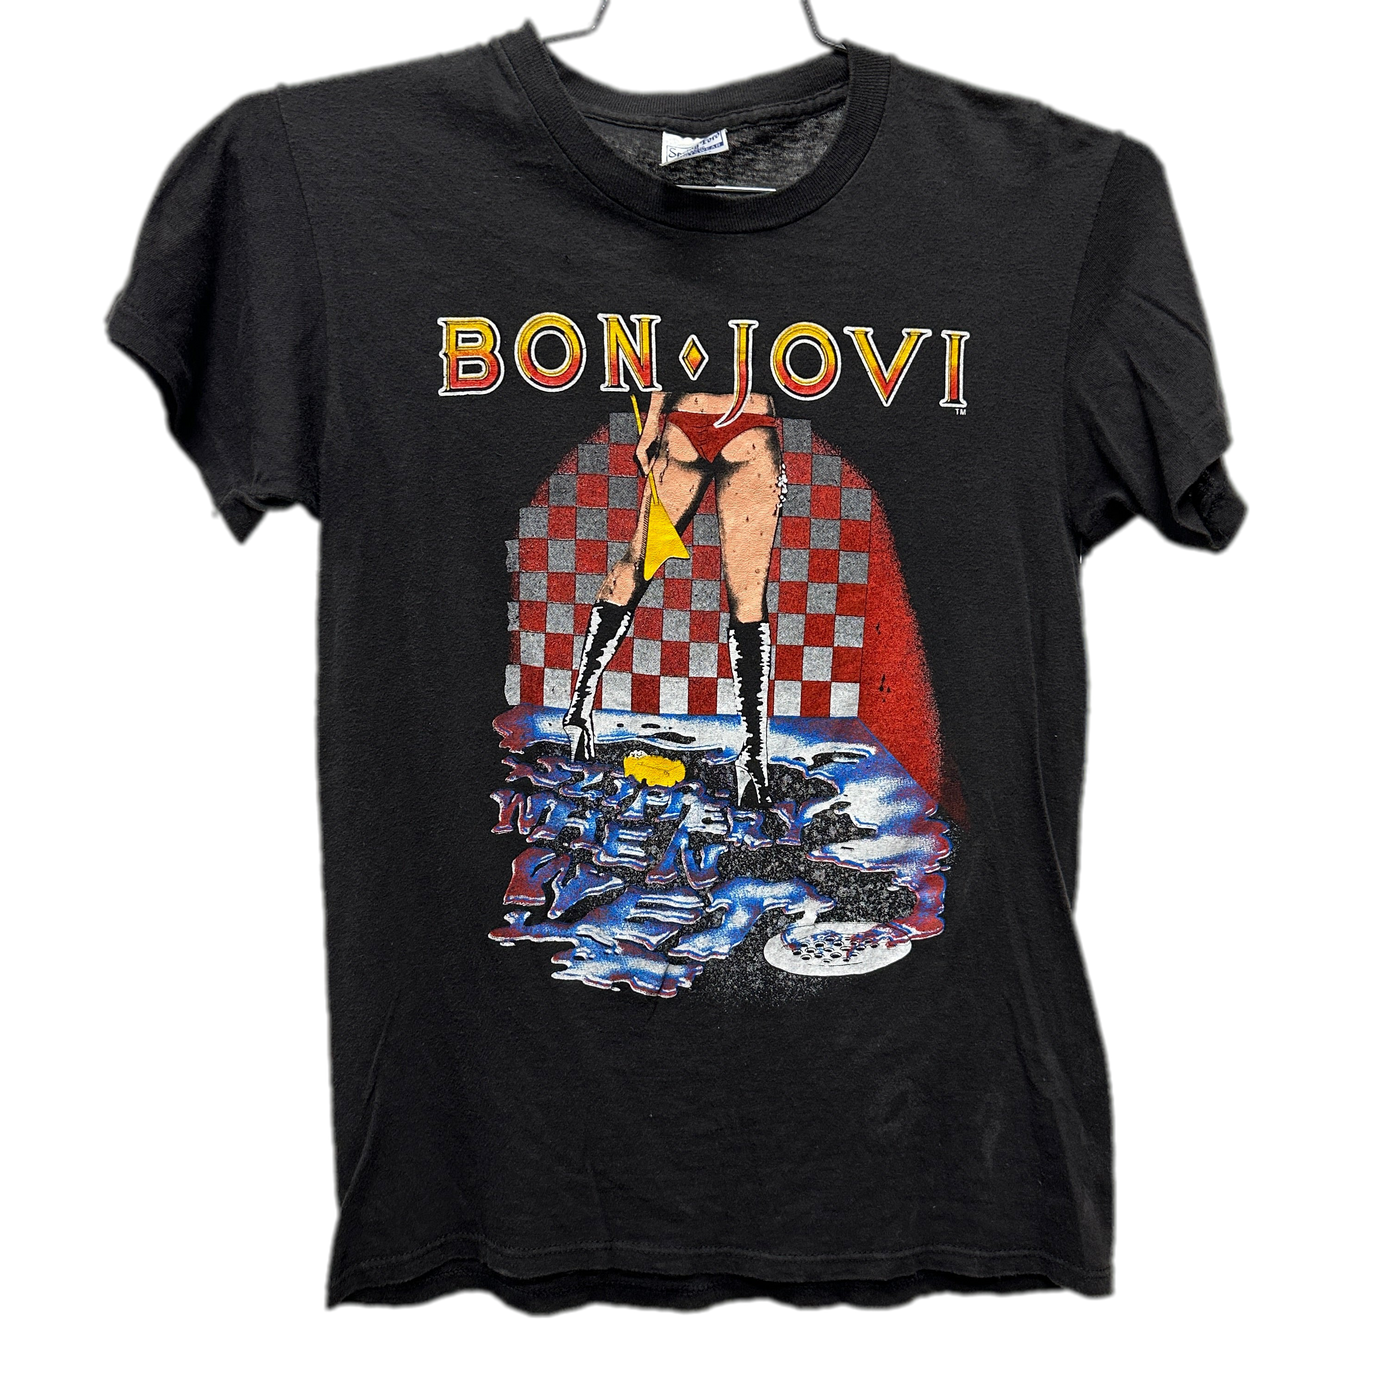 '86 Bon Jovi Tour Black Music T-Shirt sz M